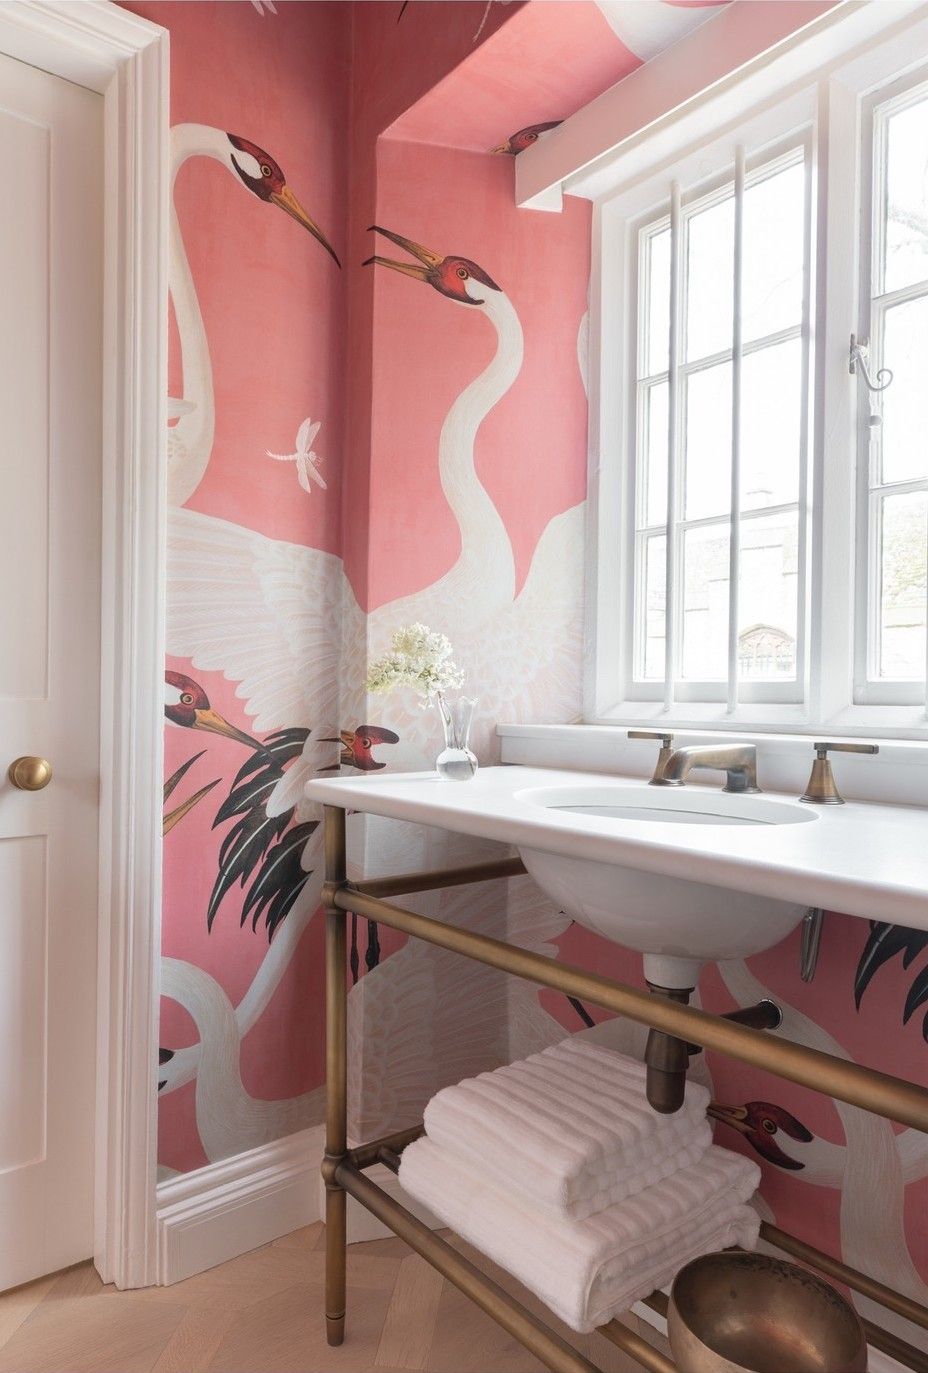 Bathroom wallpaper ideas Gucci Heron Print porterbathroom